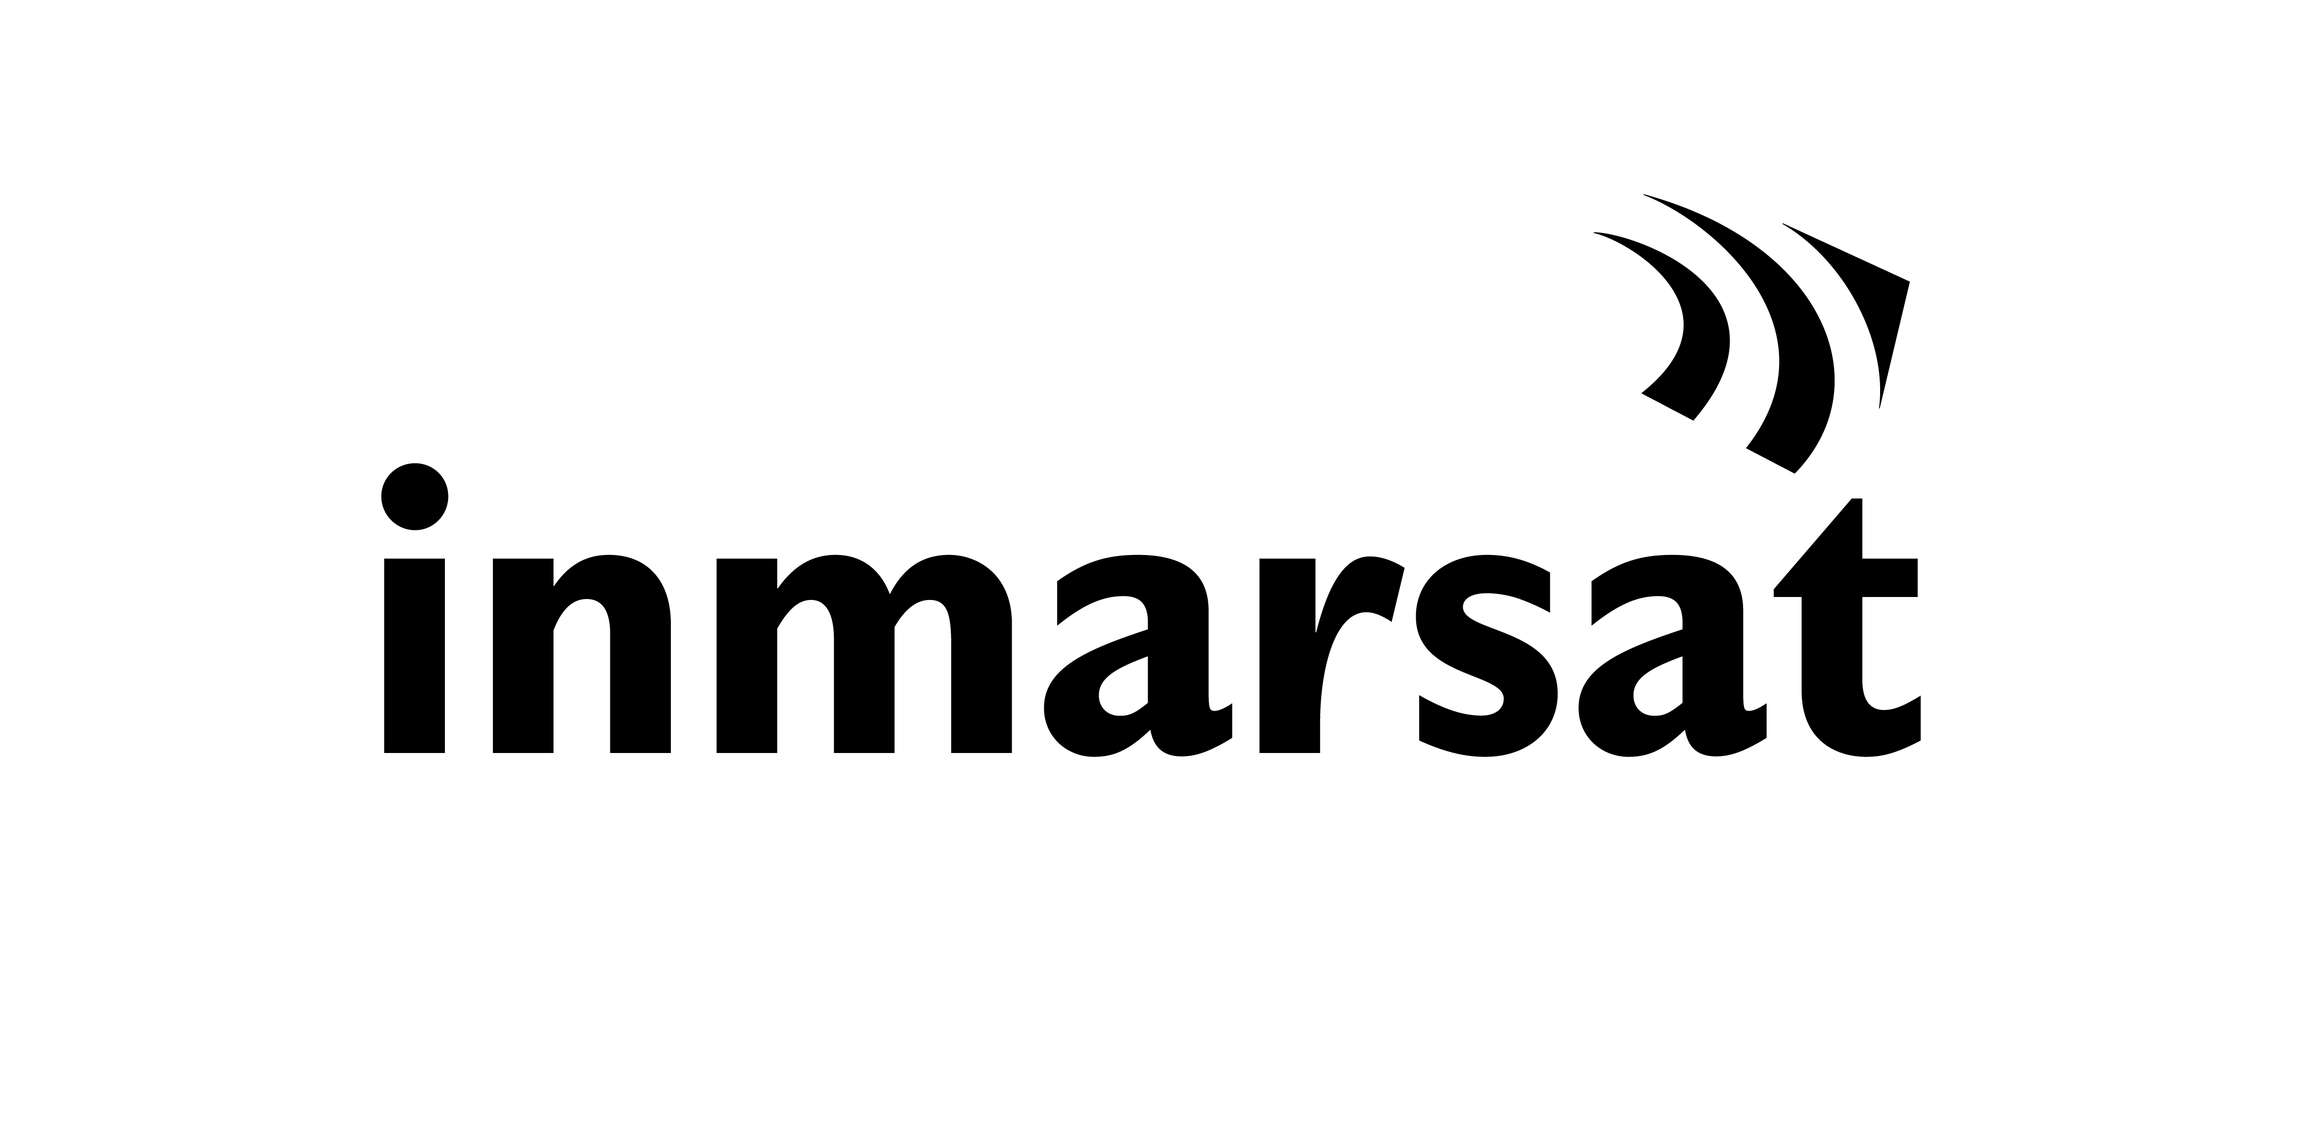 Inmarsat Group Holdings